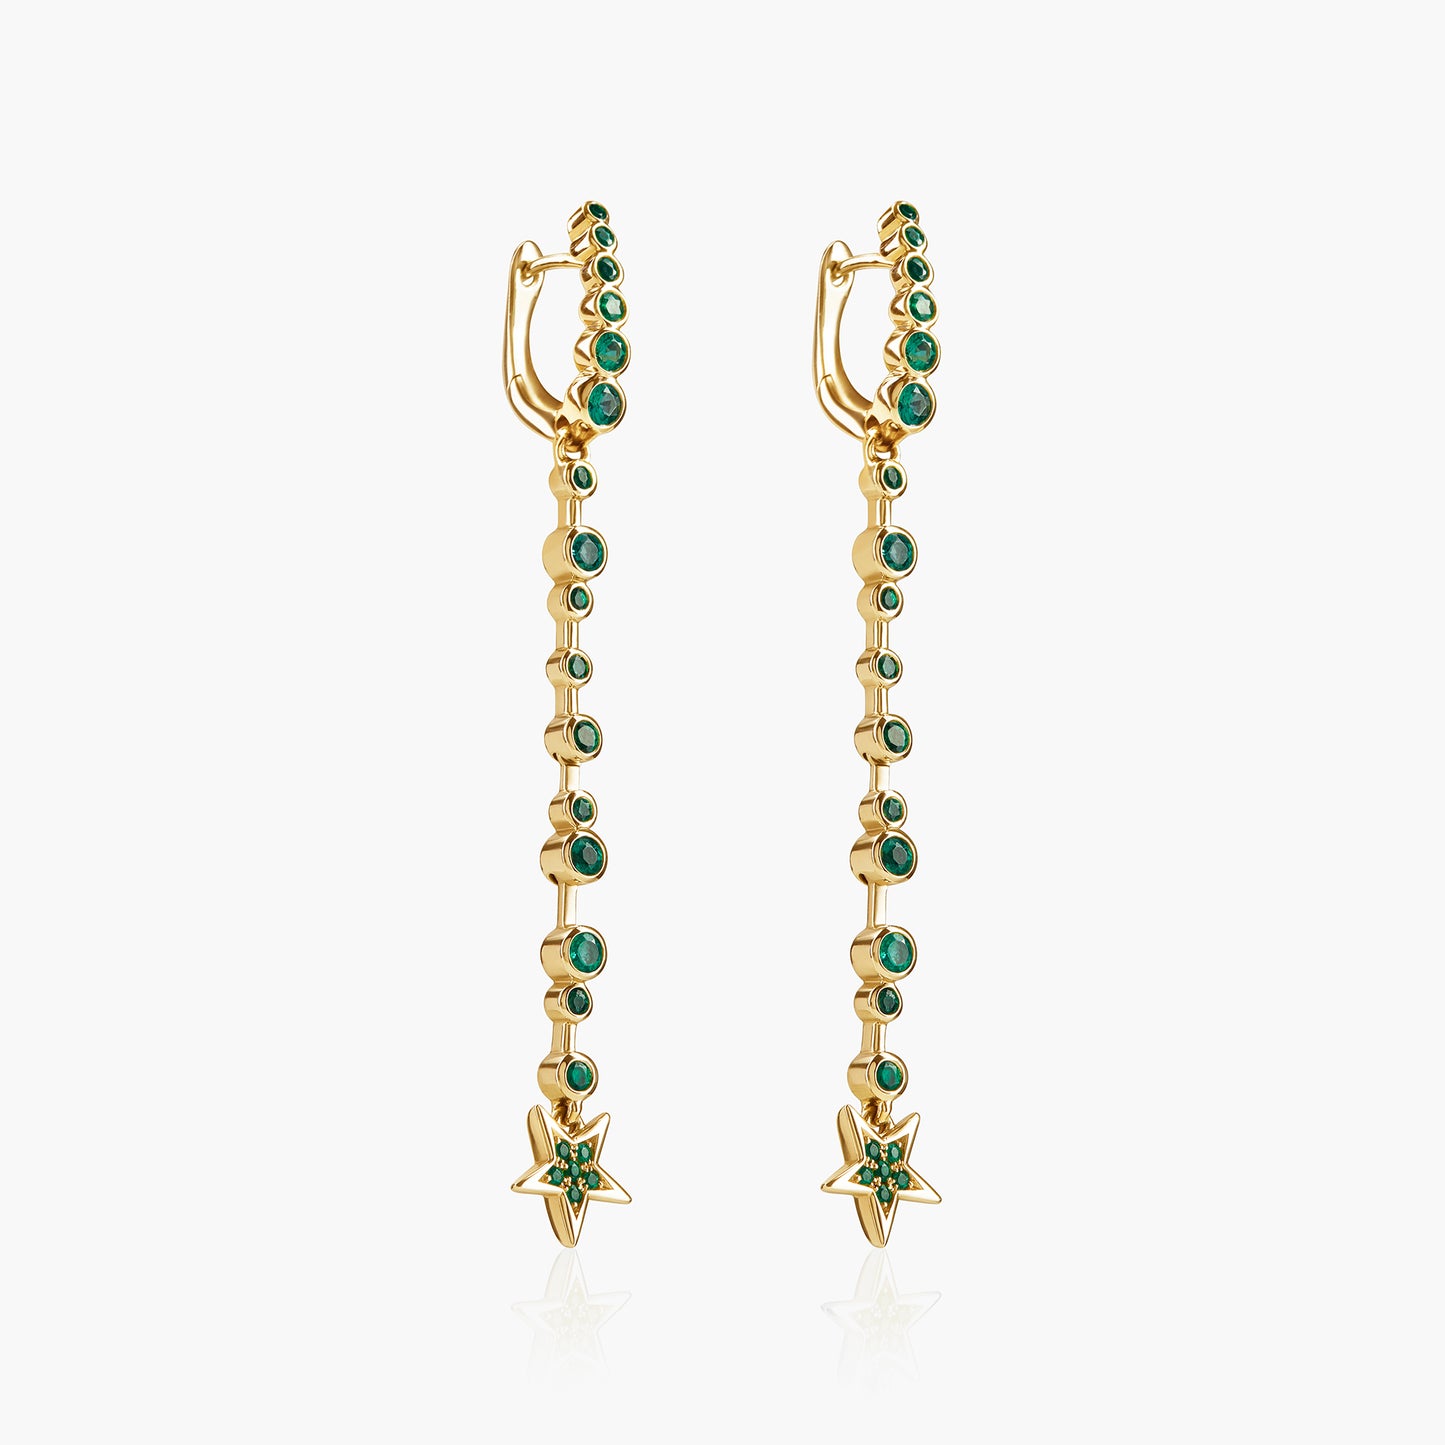 Guiding Star 18ct Yellow Gold & Emerald Long Drop Earrings